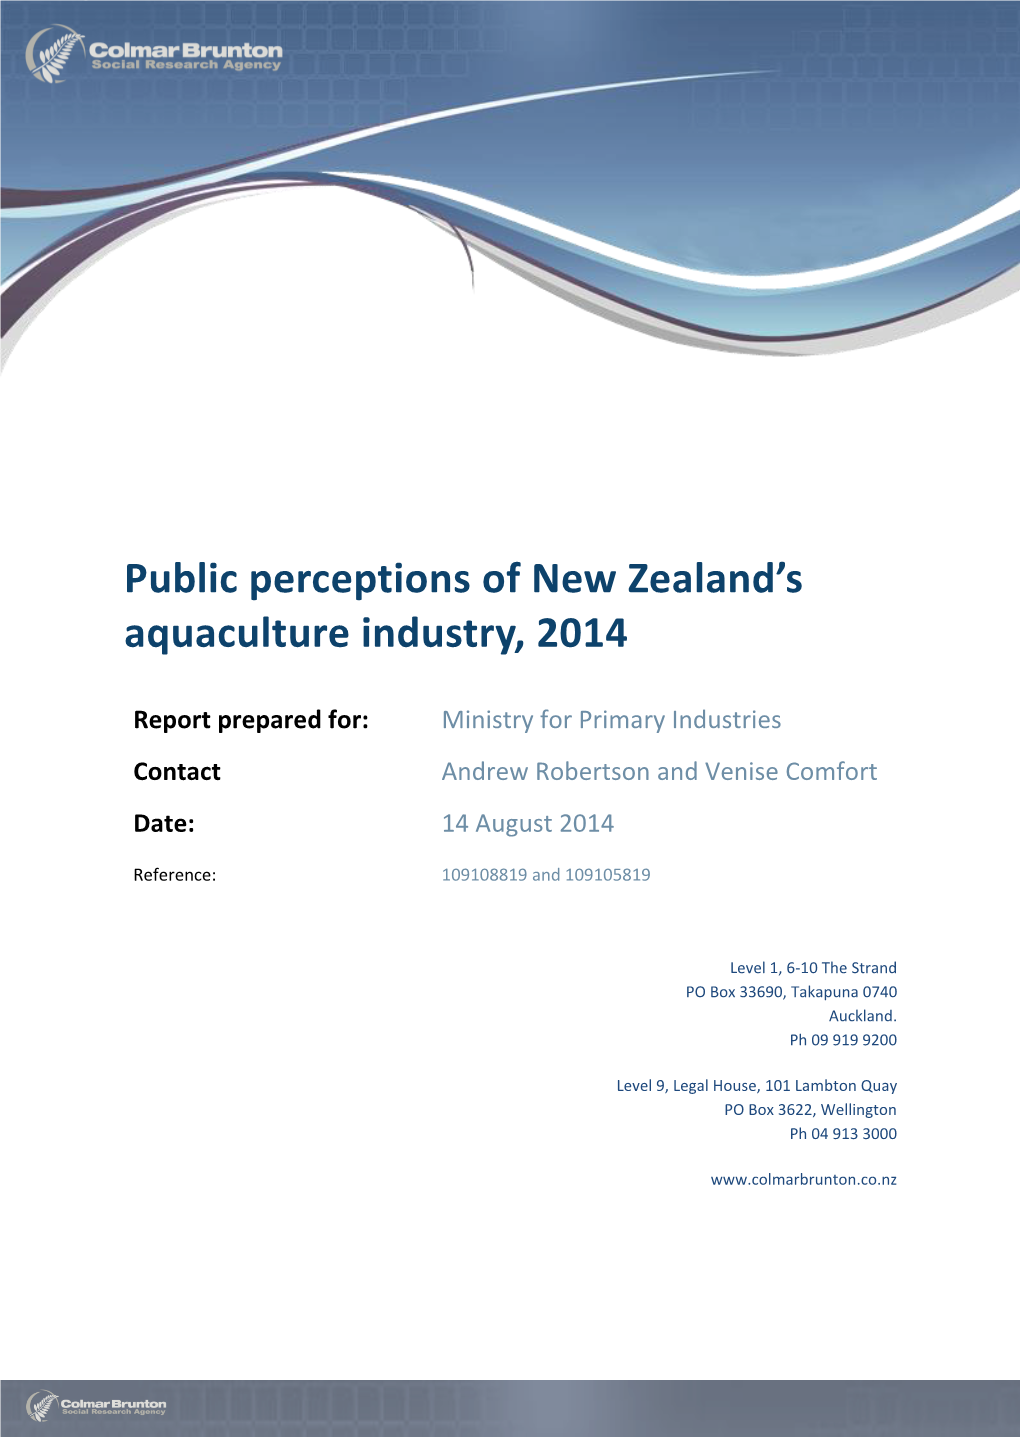 Public Perceptions of Aquaculture – New Zealand